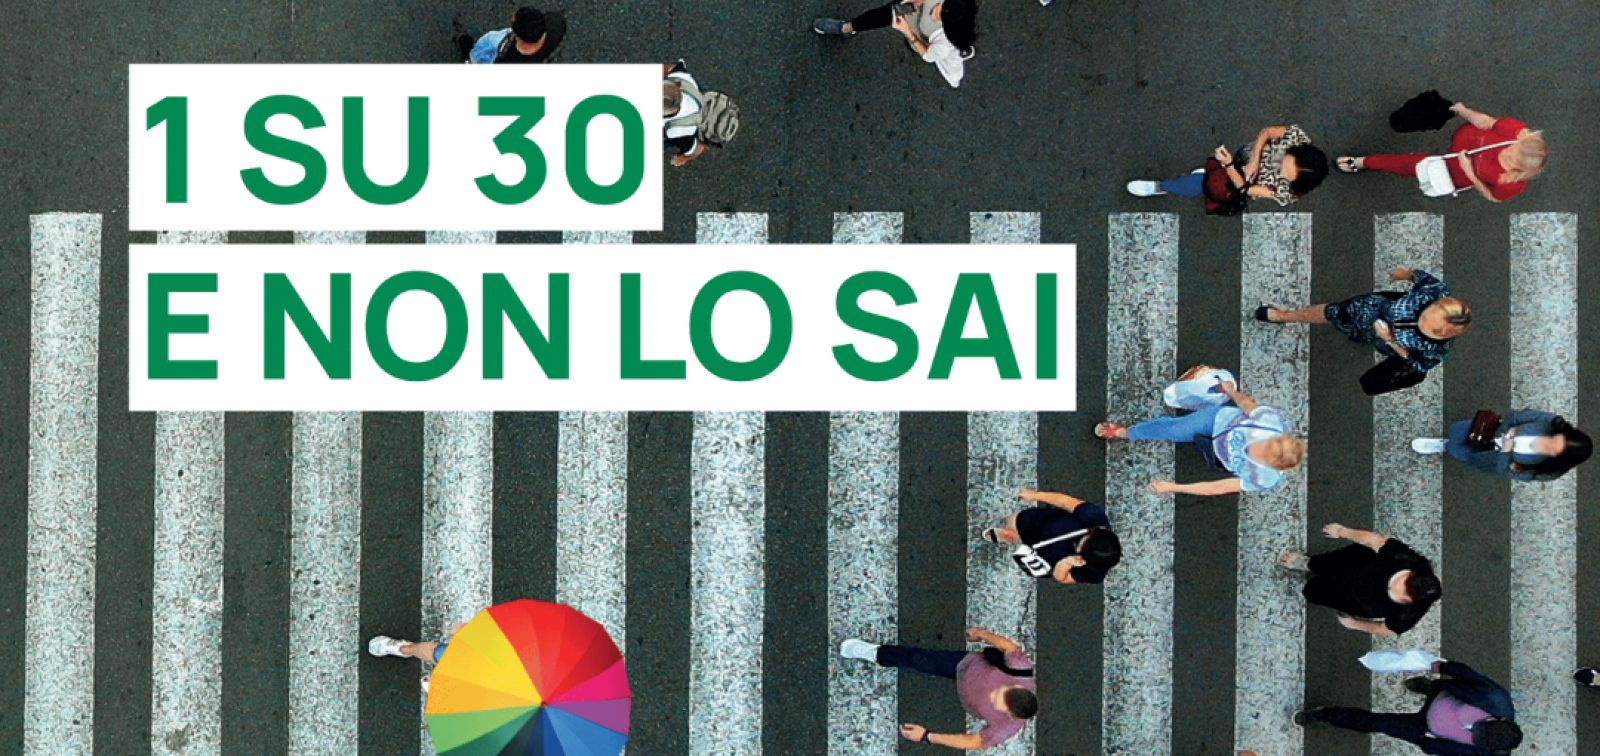 Immagine tratta dalla campagna "Uno su trenta e non lo sai" sul test del portatore sano della fibrosi cistica: persone viste dall'alto camminano su una strada, una ha un ombrello colorato